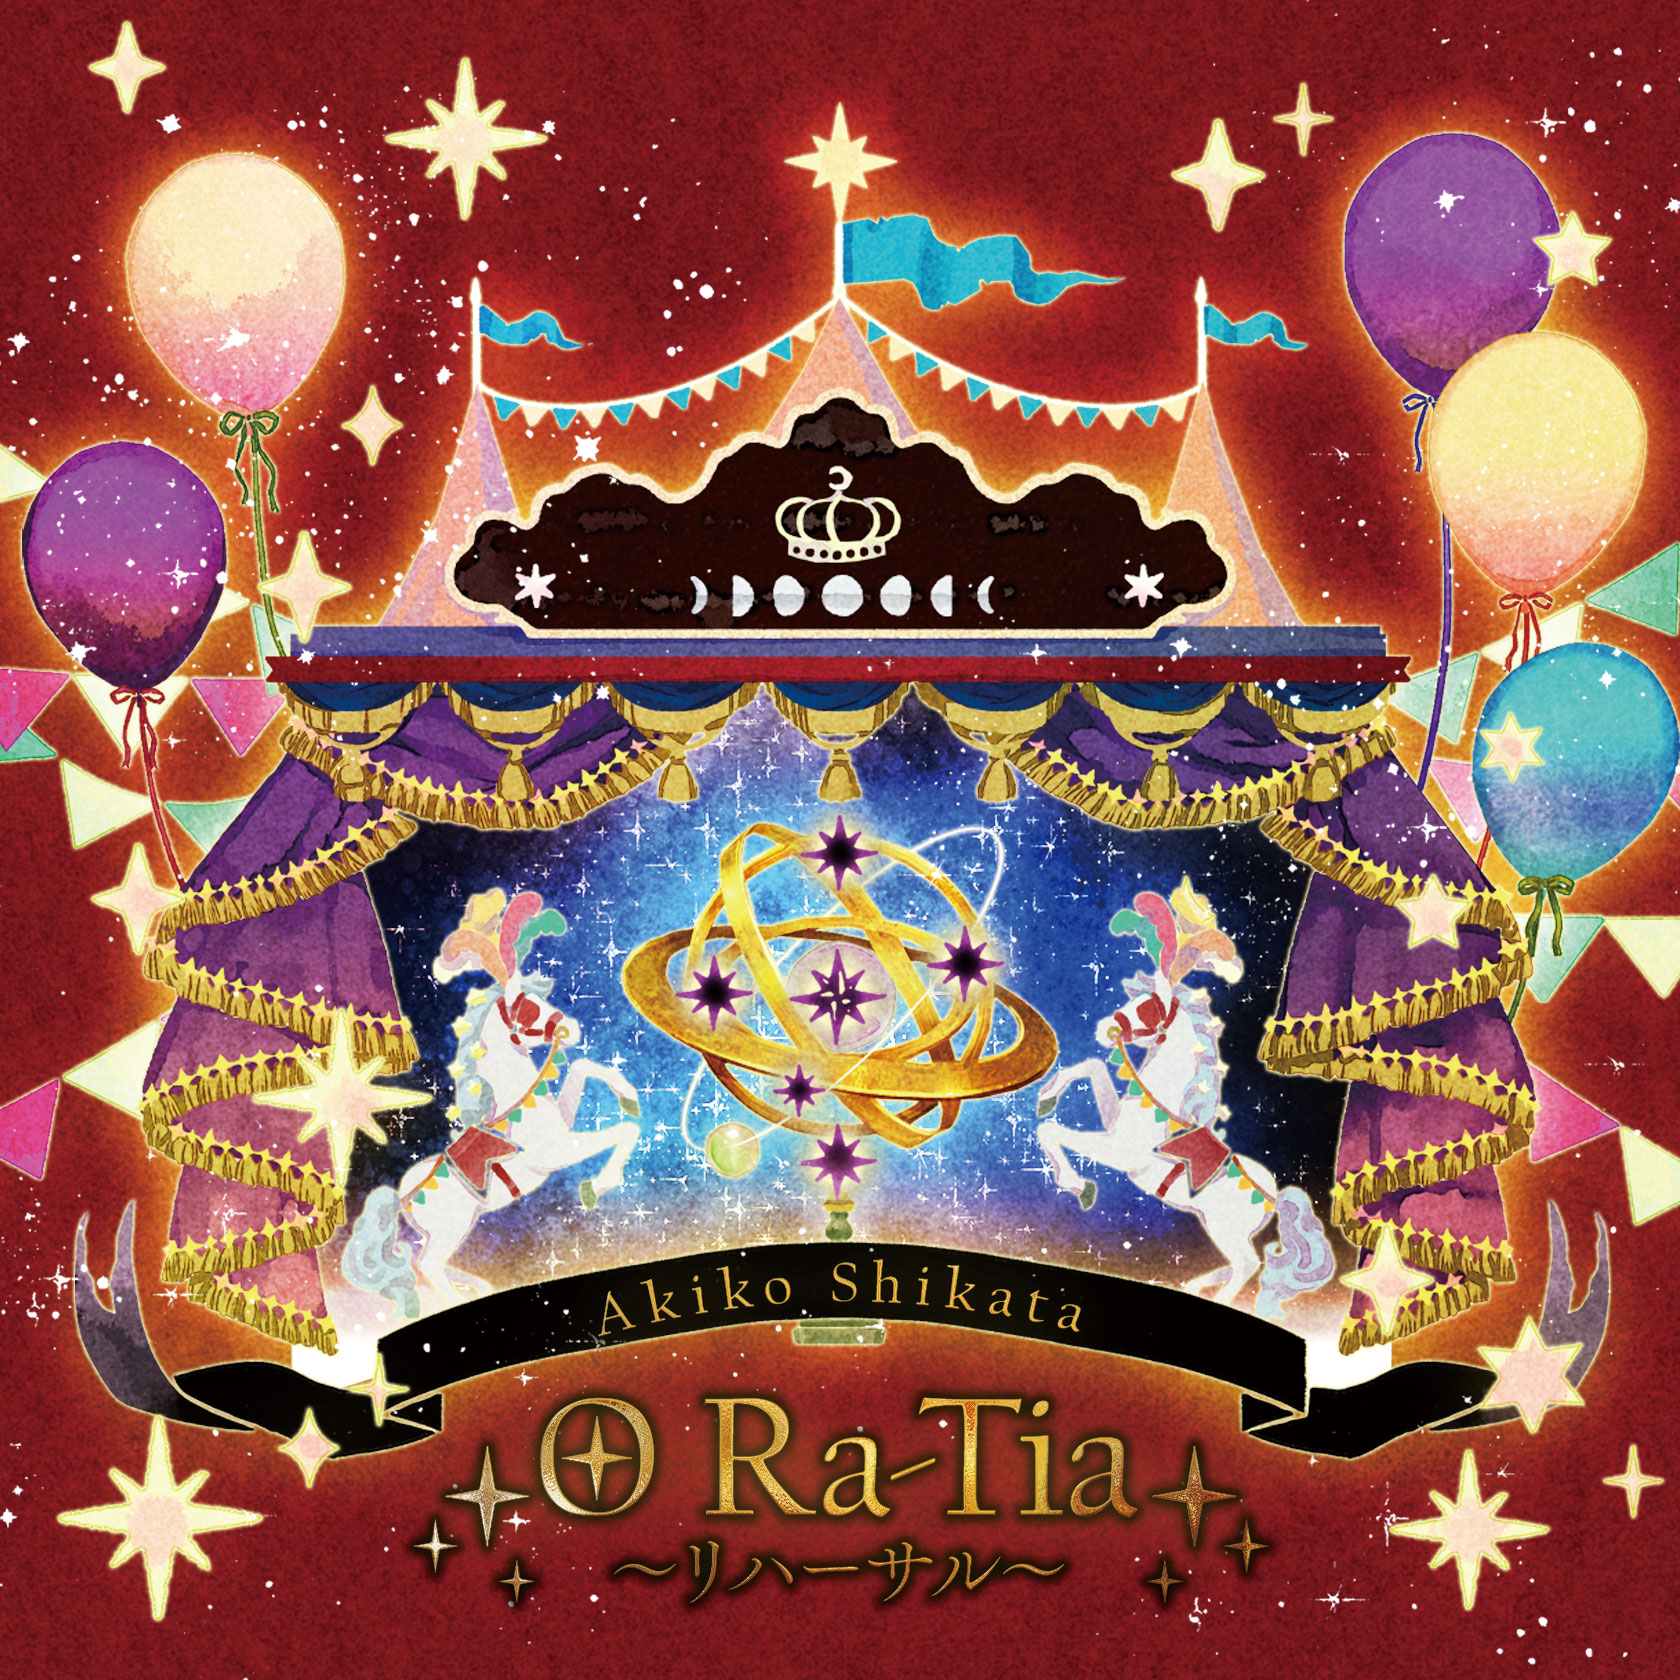 歌曲「O Ra-Tia～リハーサル～」音源ダウンロードページジャケット写真